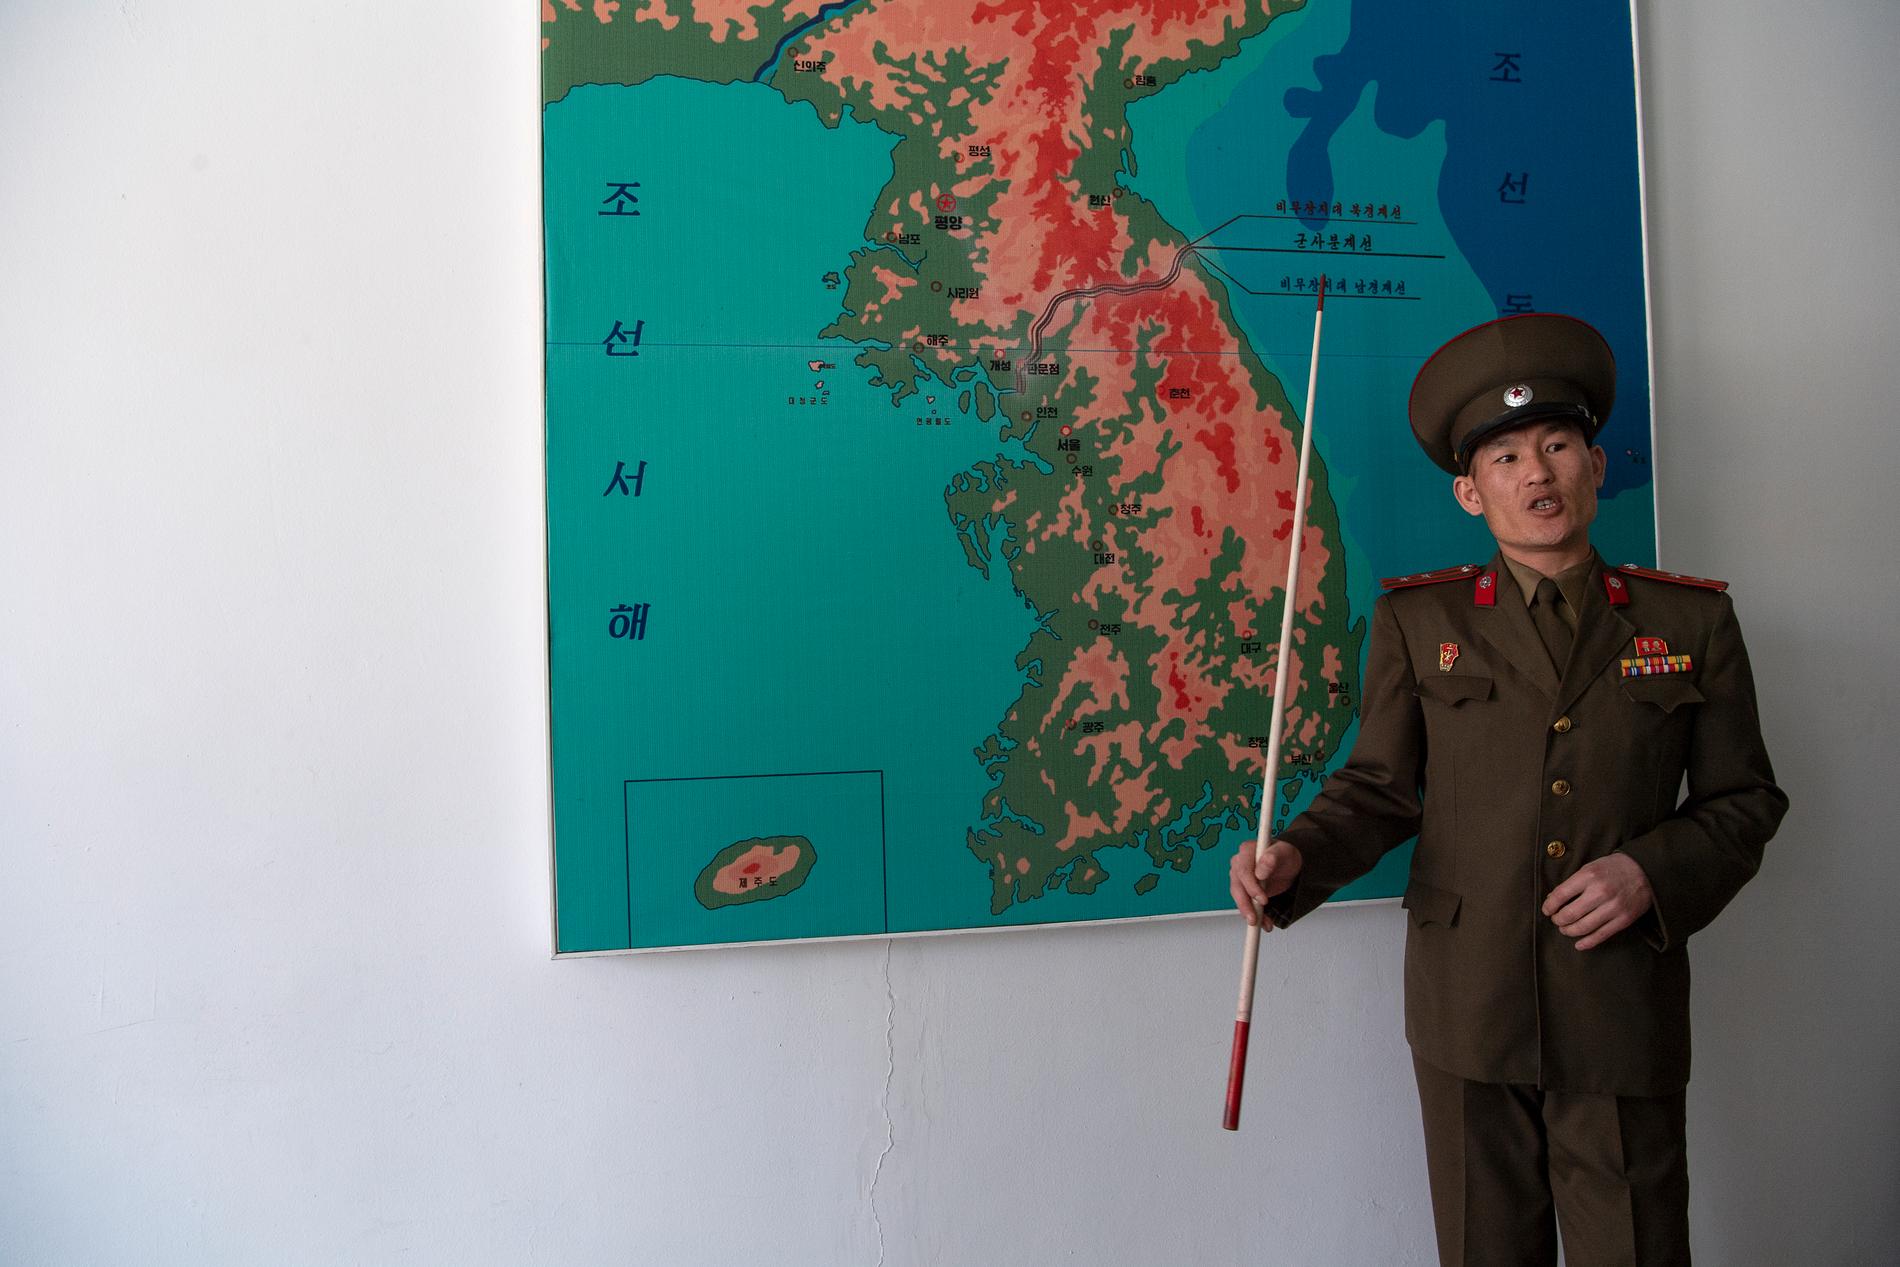 Krig kan bryta ut när som helst på Koreahalvön, säger överstelöjtnanten Hyong Nuyong Jin